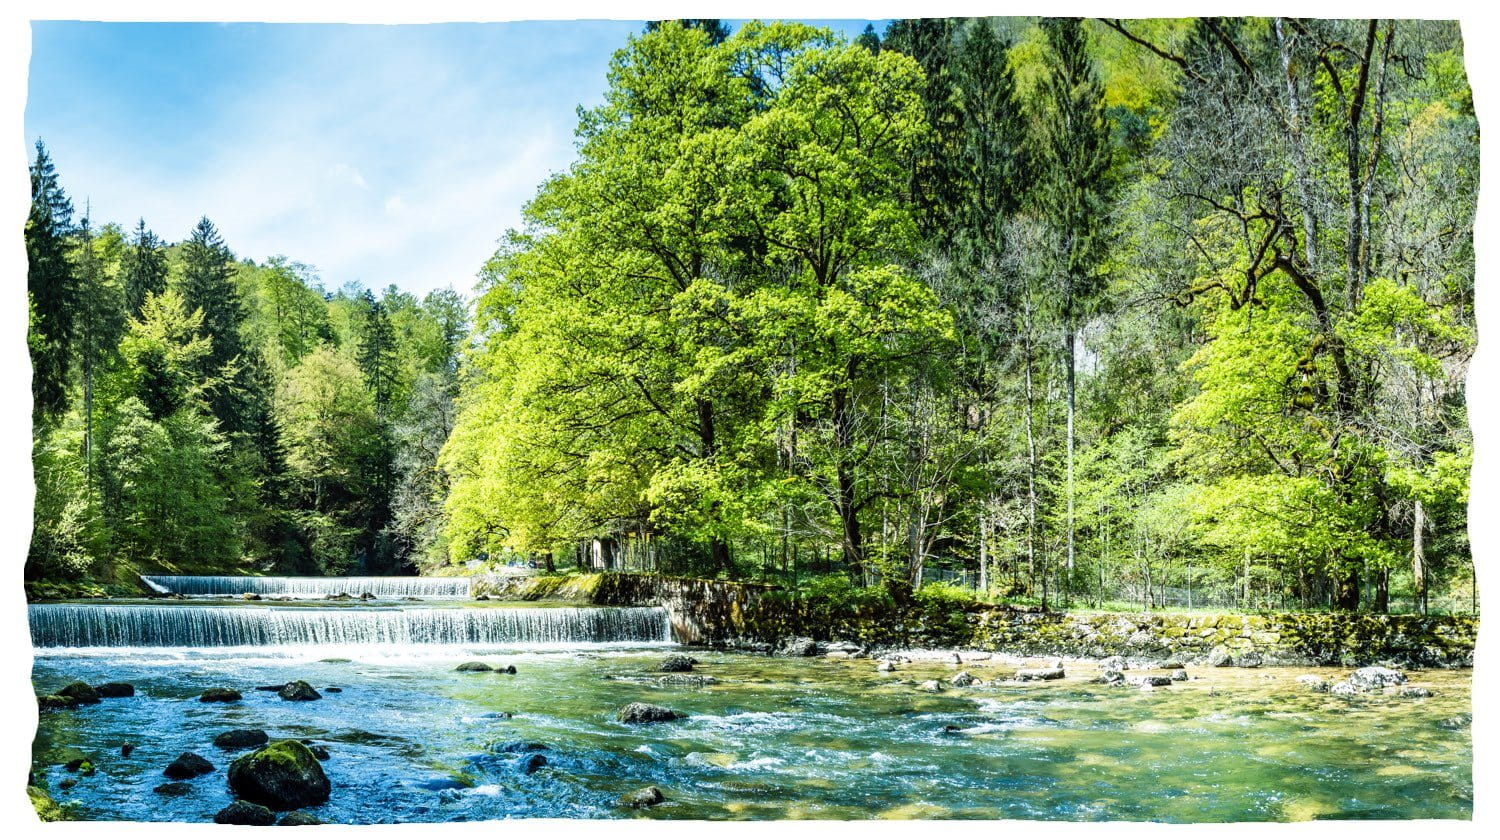 Sauberer Fluss mit kleinem Wasserfall, der durch Wald fließt